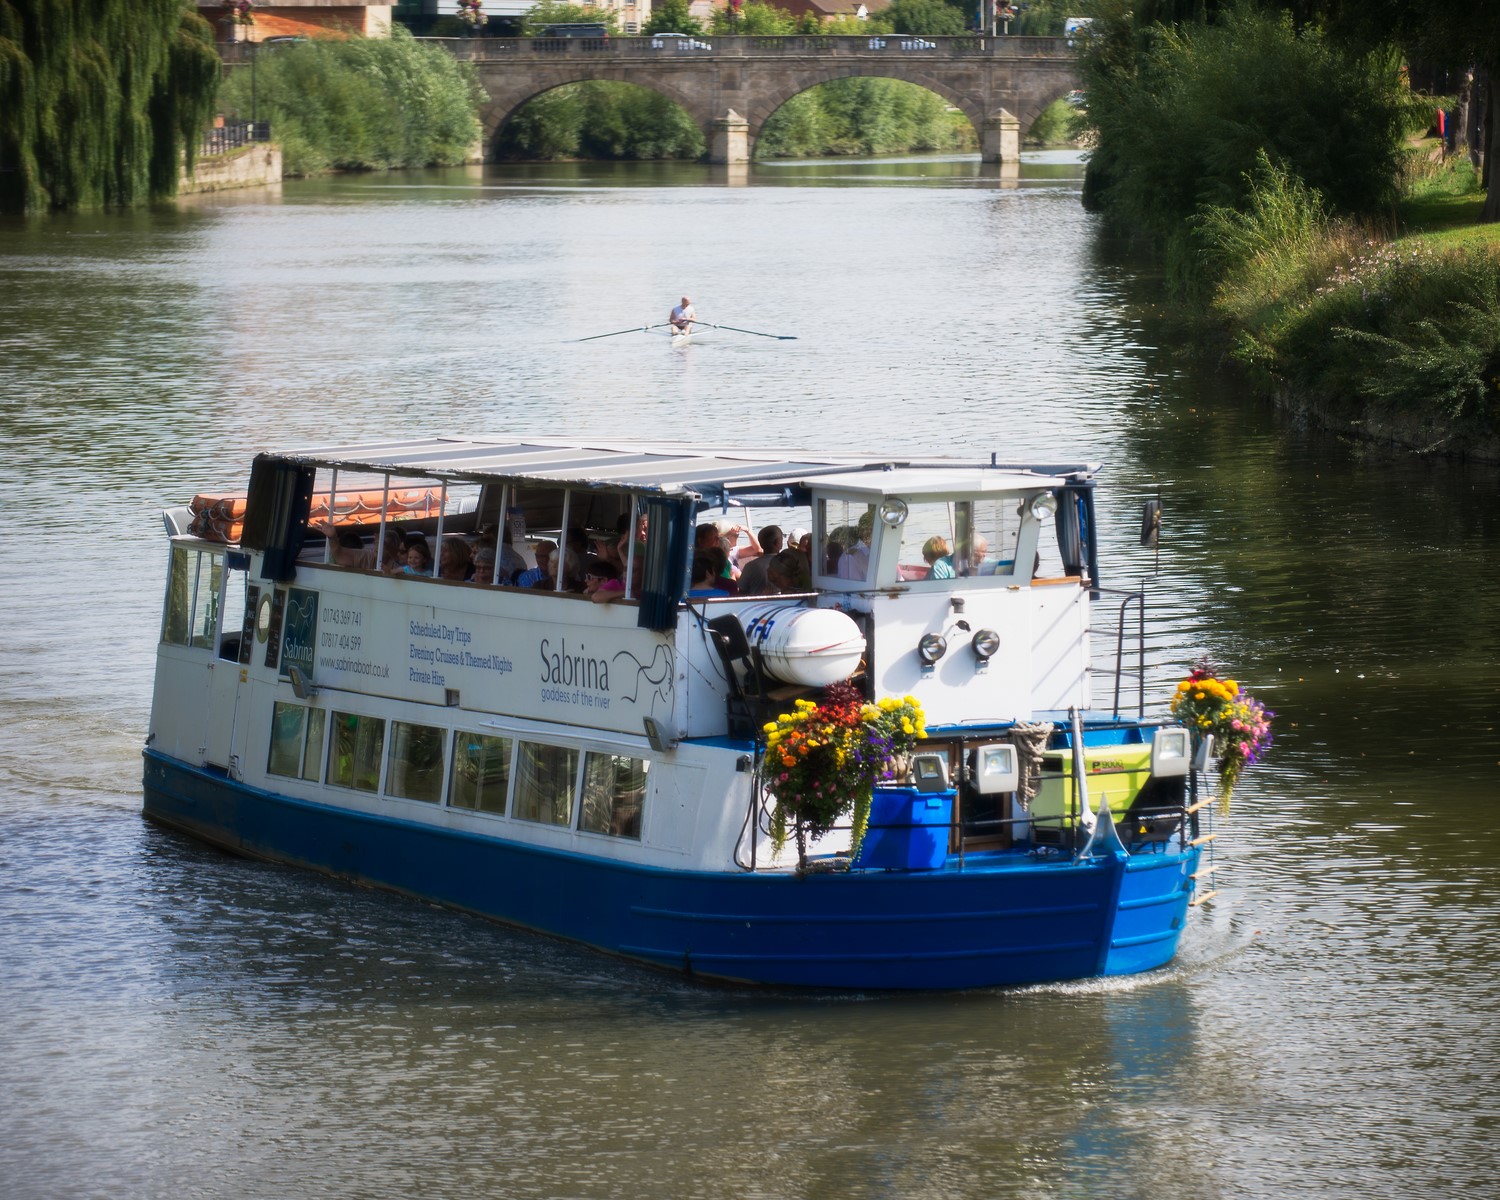 Sabrina boat trips on the River Severn at Shrewsbury